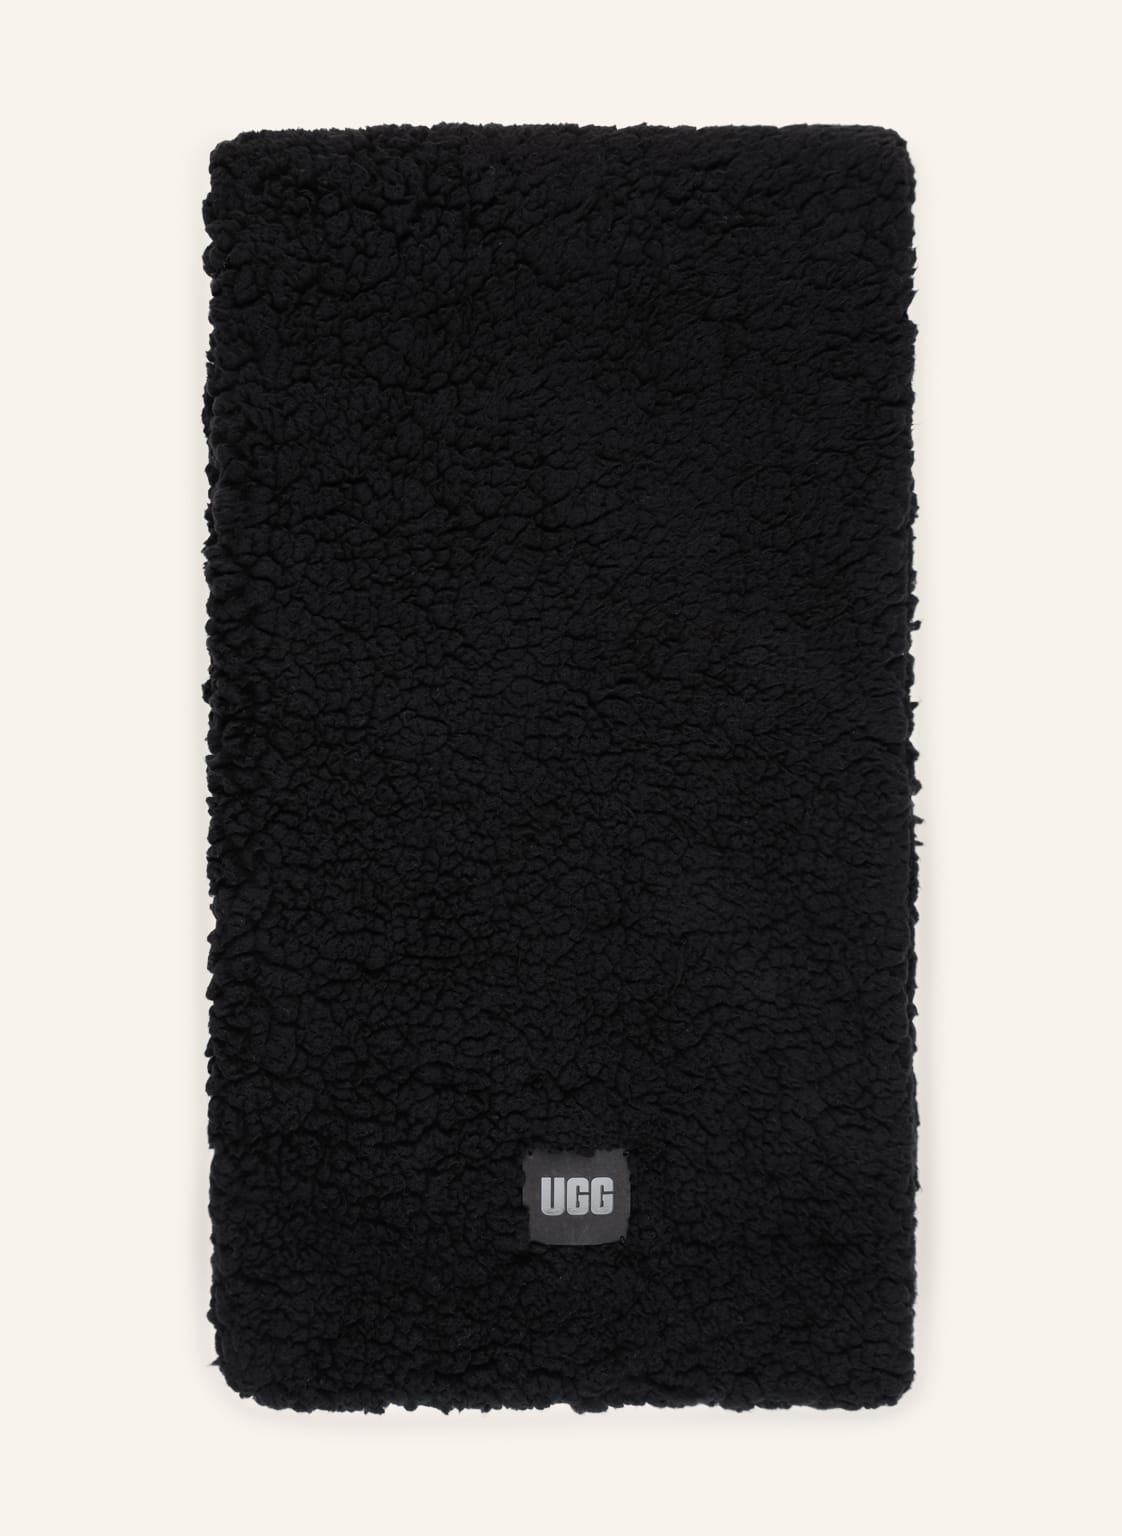 Ugg Teddyfell-Schal schwarz von Ugg